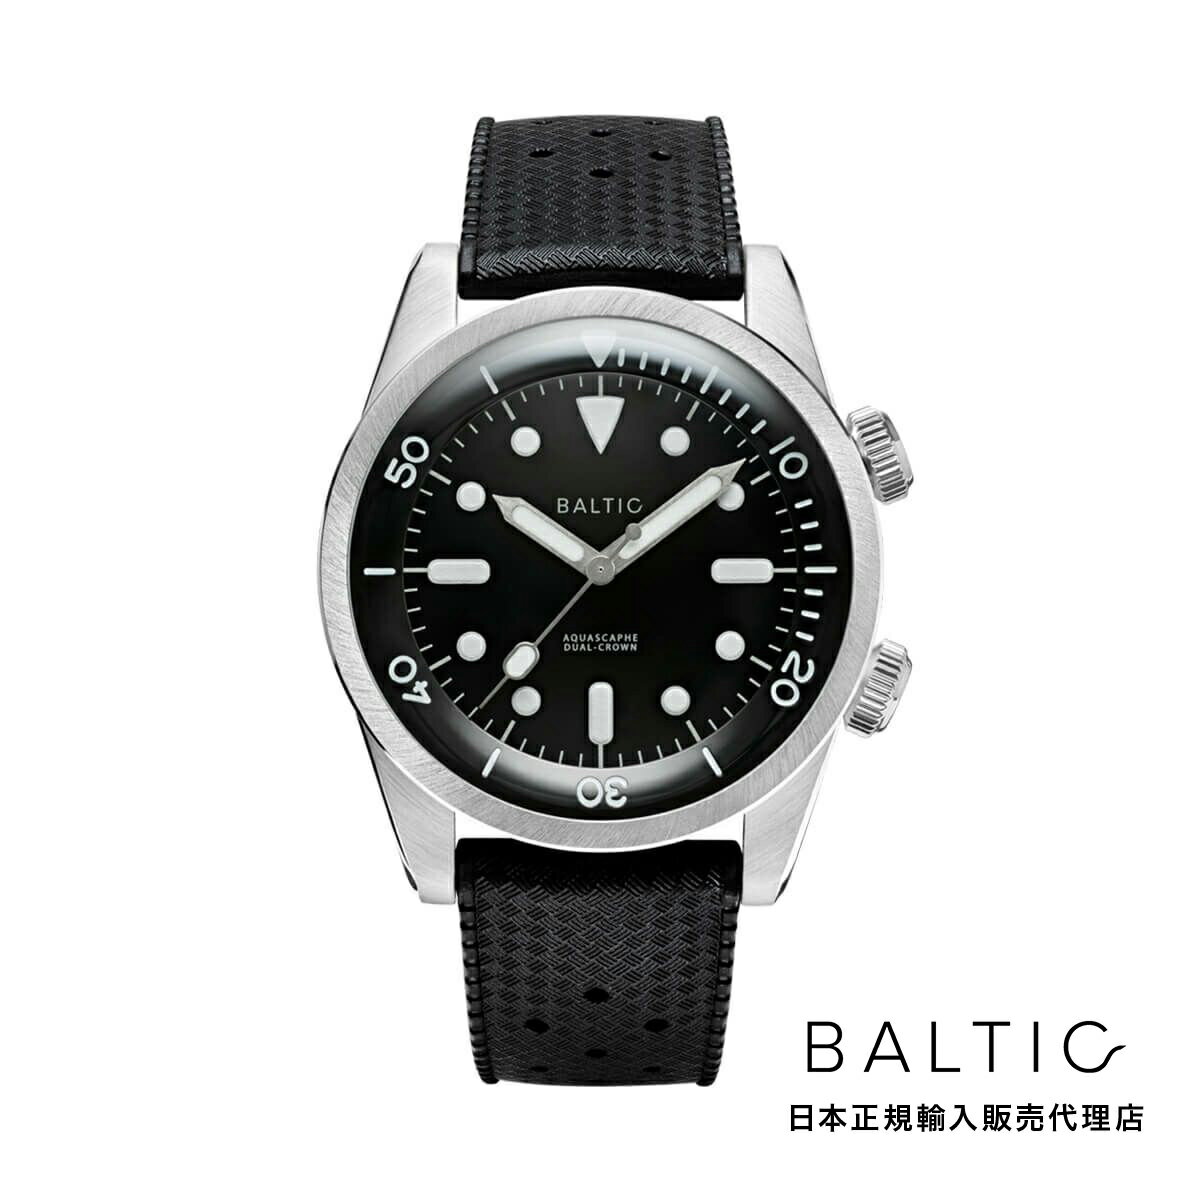 バルチック BALTIC WATCHES コンプレッサー ダイバー ウォッチ ブラックダイアル オートマチック デュアルクラウン ブラックトロピックラバーベルト メンズ 男性用 腕時計